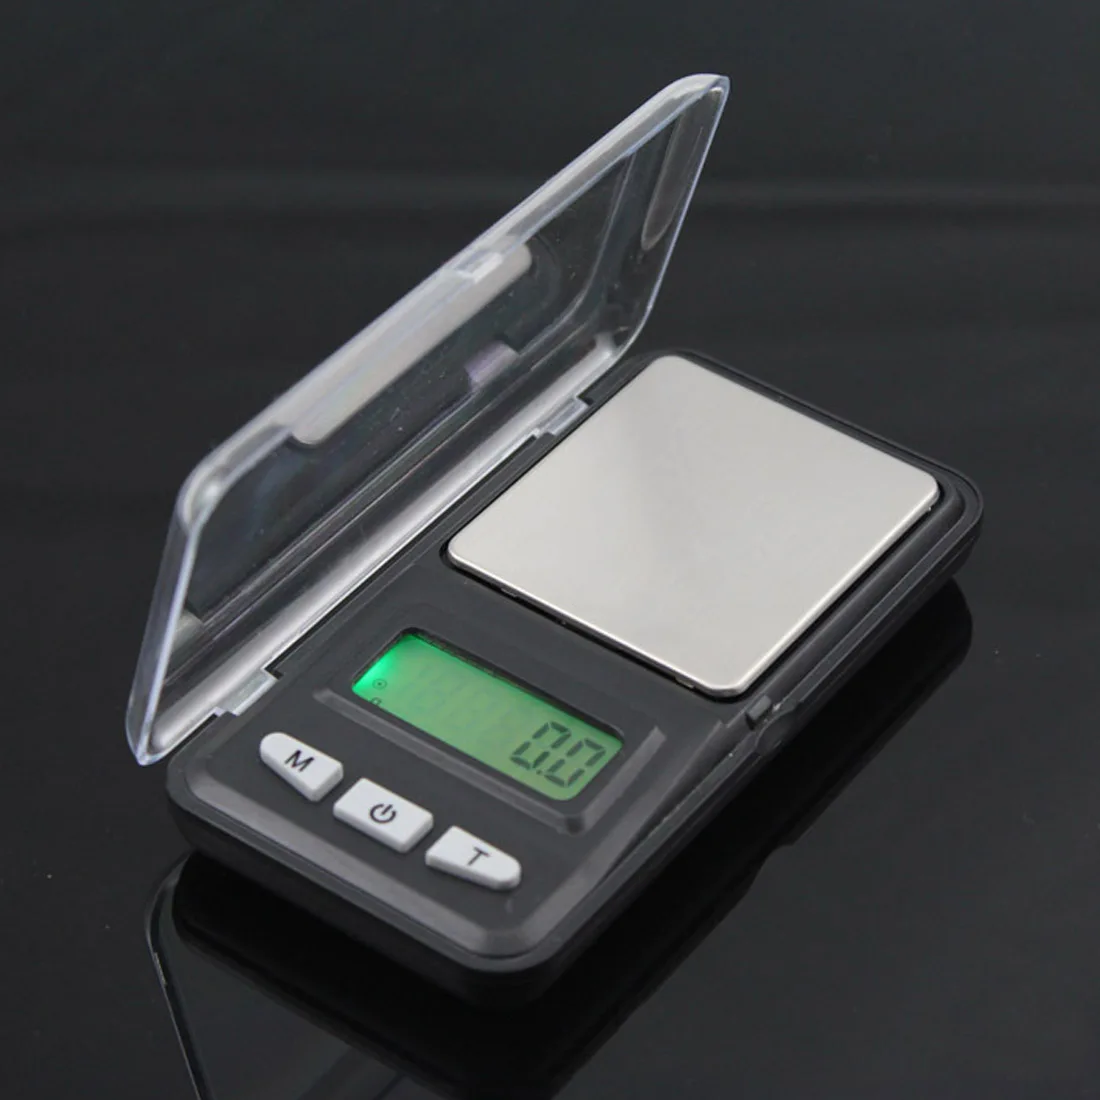 500 г/0,01 г точные карманные лабораторные ювелирные весы большой экран цифровые весы электронные грам весы с подсветкой